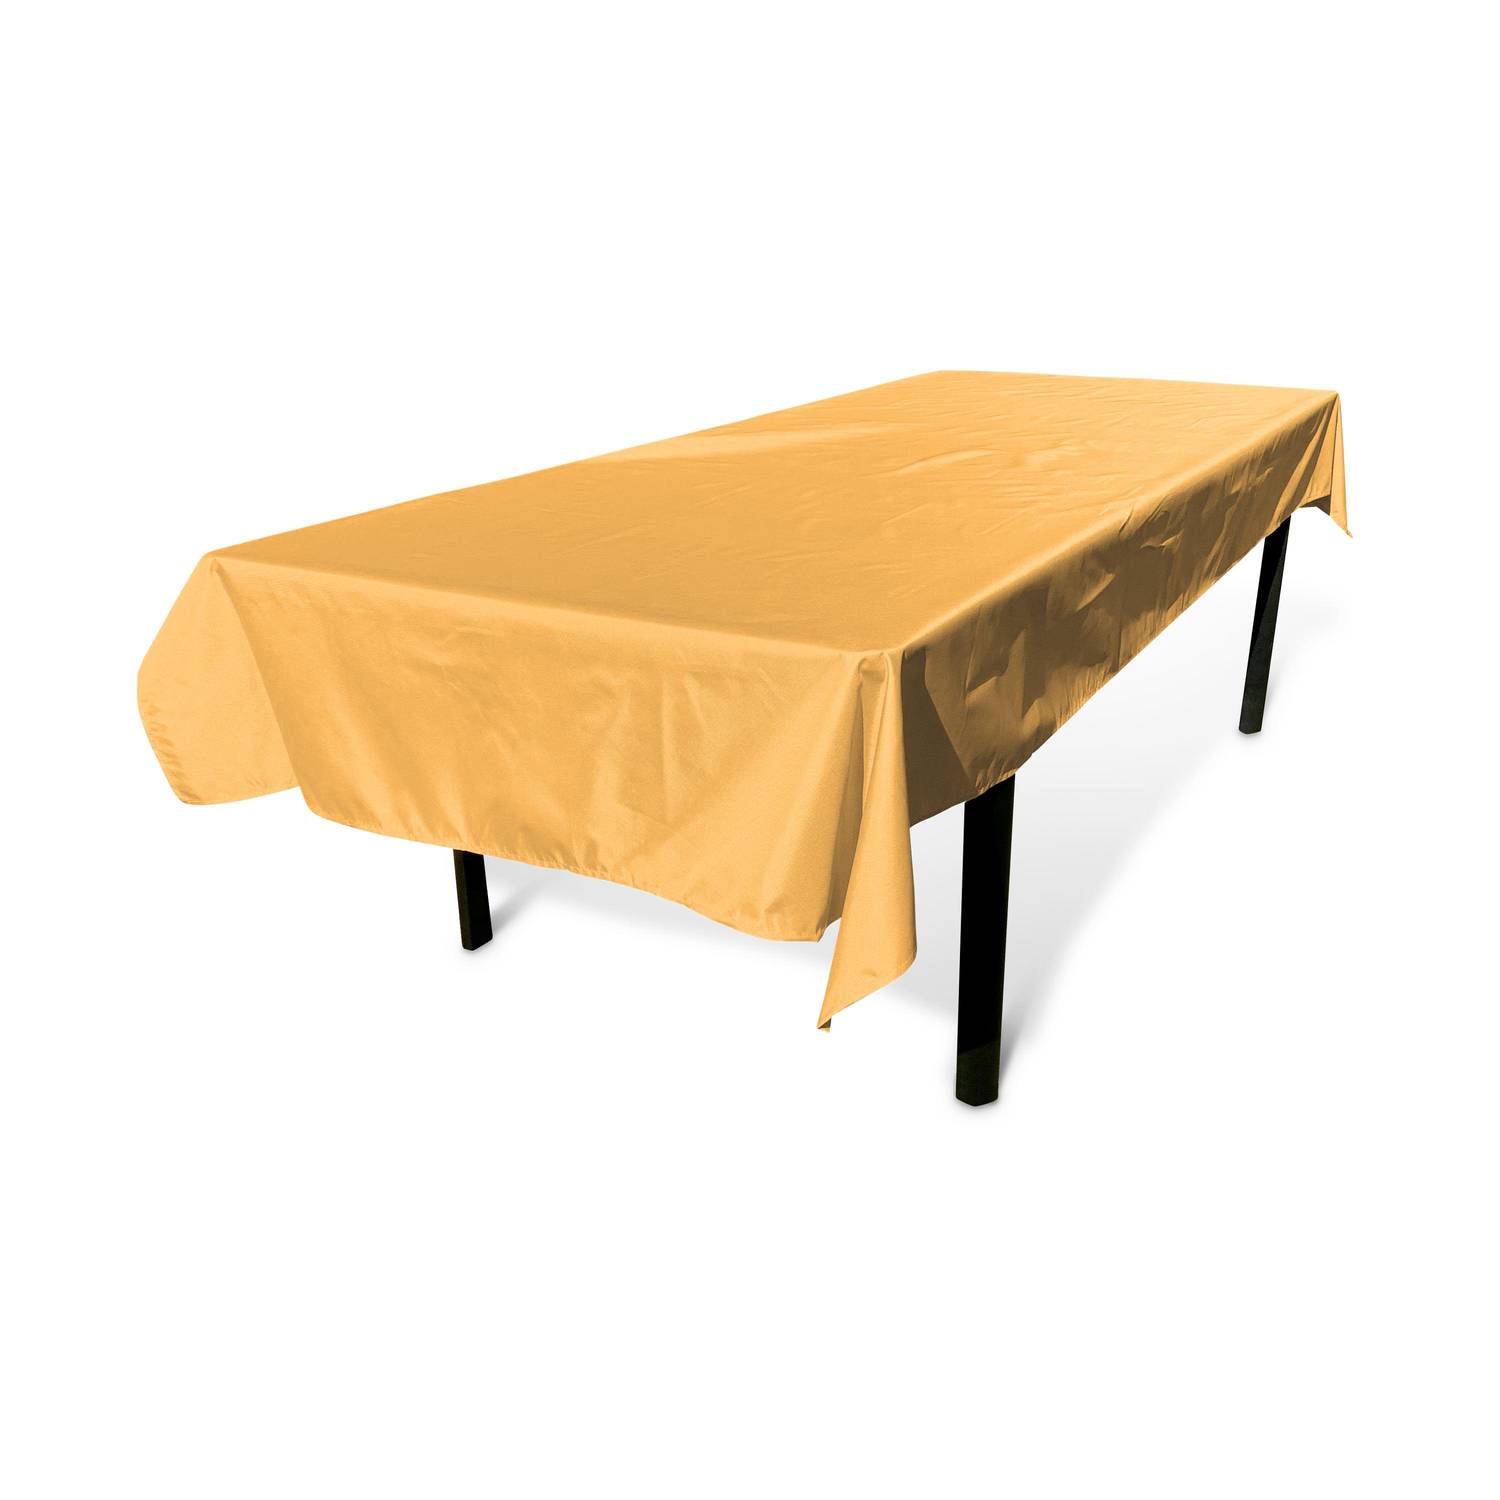 Kollektion HERITAGE - Outdoor-Tischdecke 300 x 140 cm Senffarben, 100% Polyester, schützt den Tisch, UV-Schutz, sommerlicher Stil Photo1